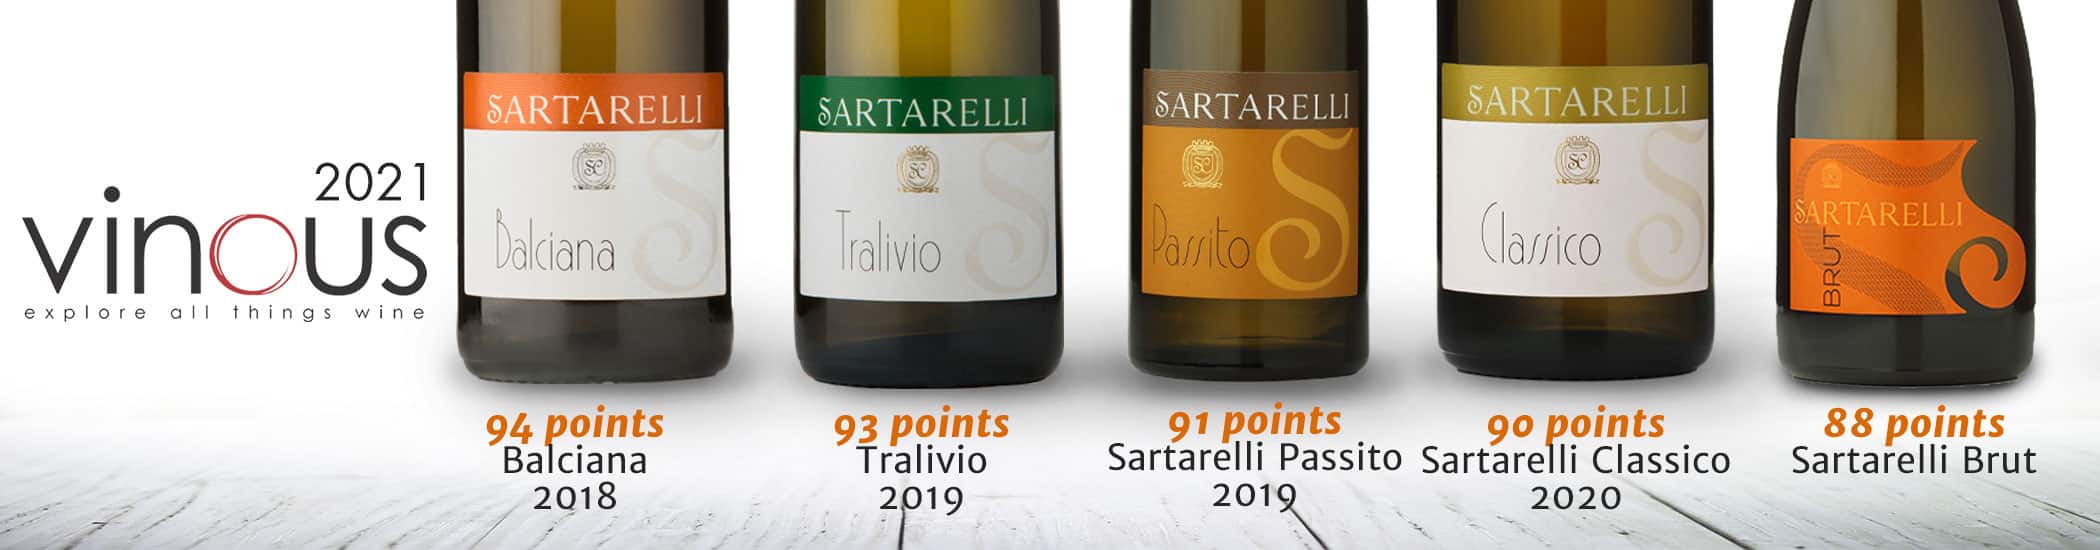 Sartarelli-Vinous 2021 (News-Eng)